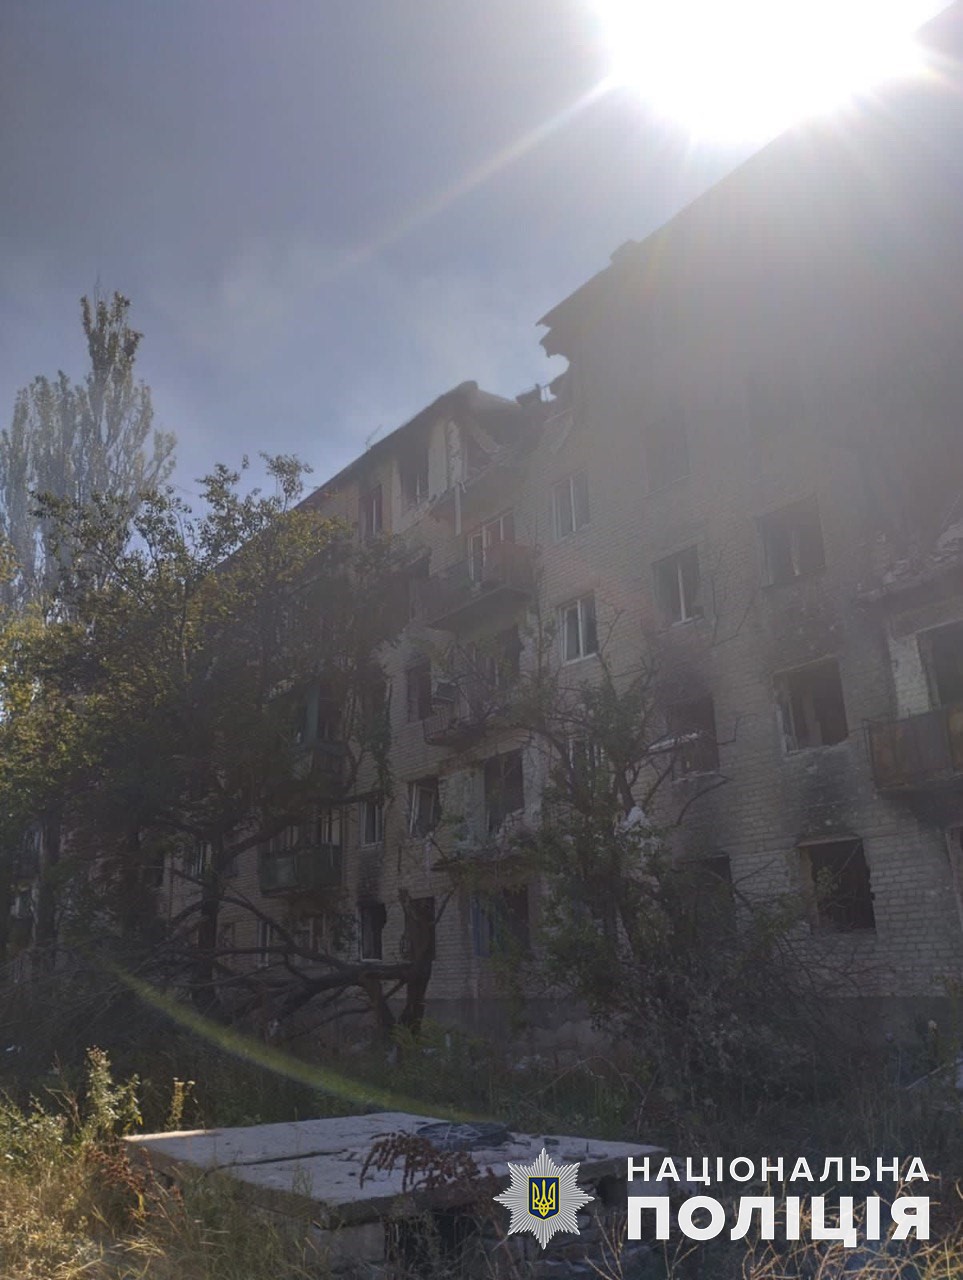 Житлова багатоповерхівка, яку зруйнували росіяни 15 серпня